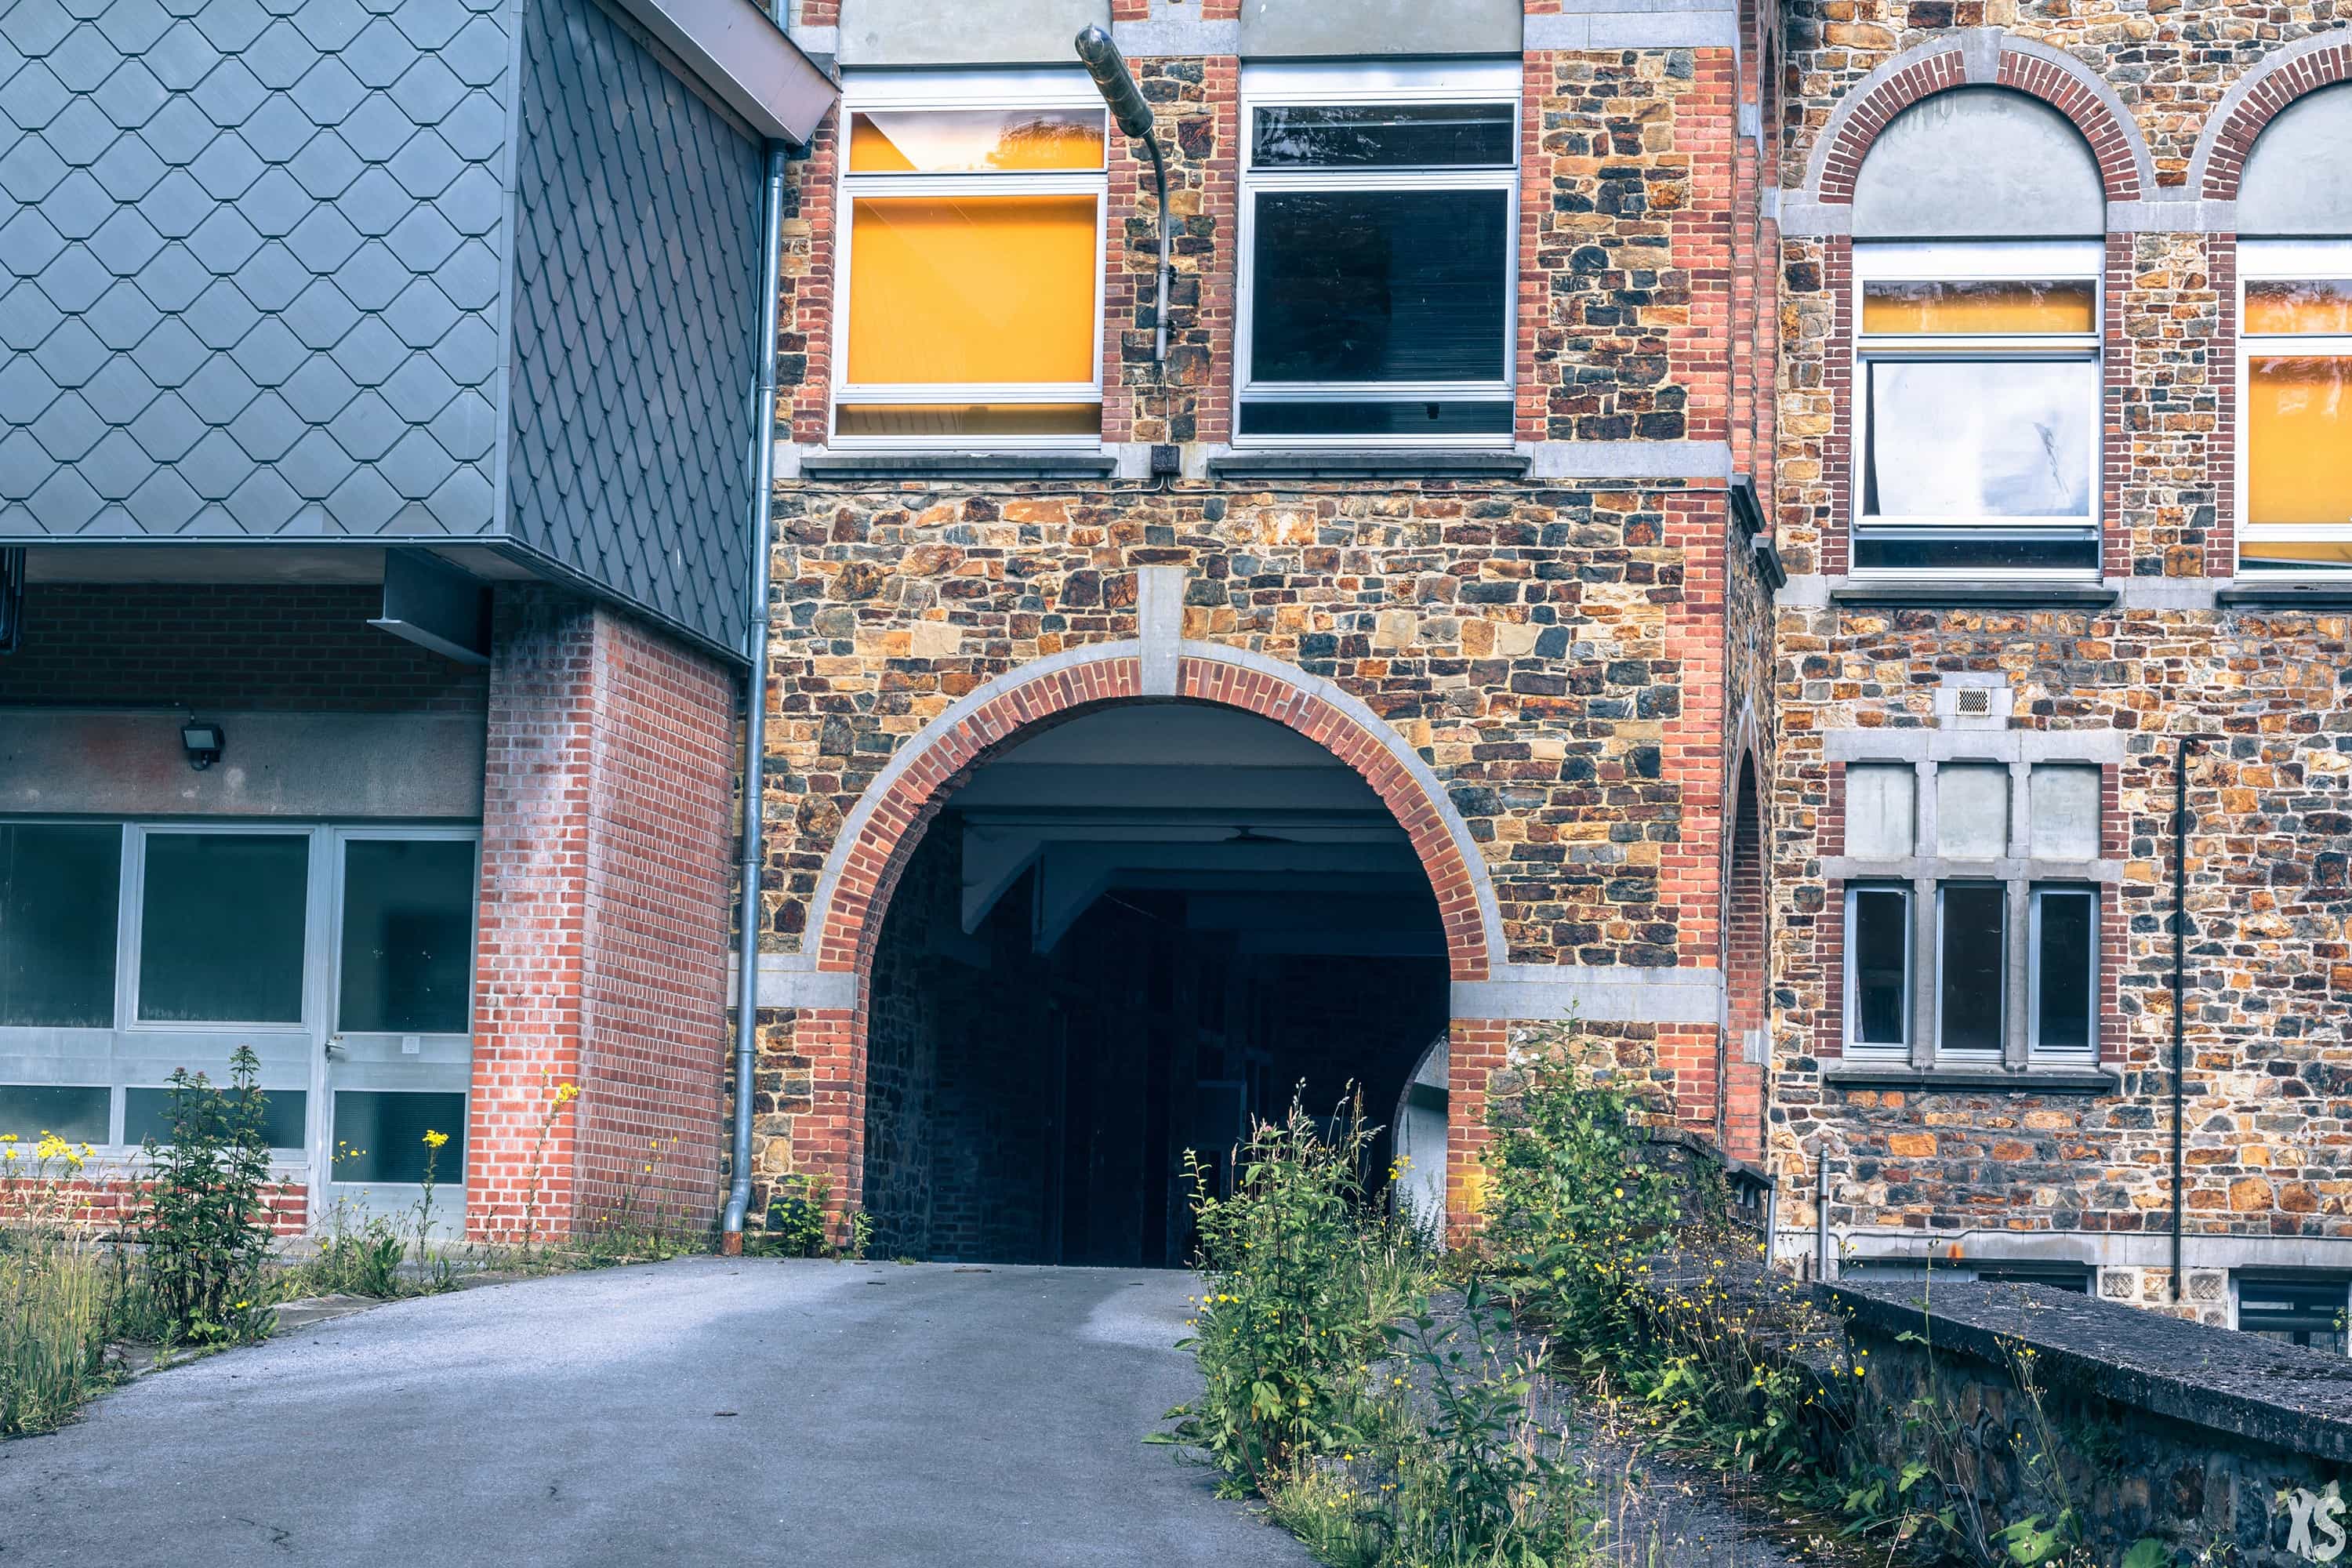 Sanatorium abandonné situé en Belgique - Urbex